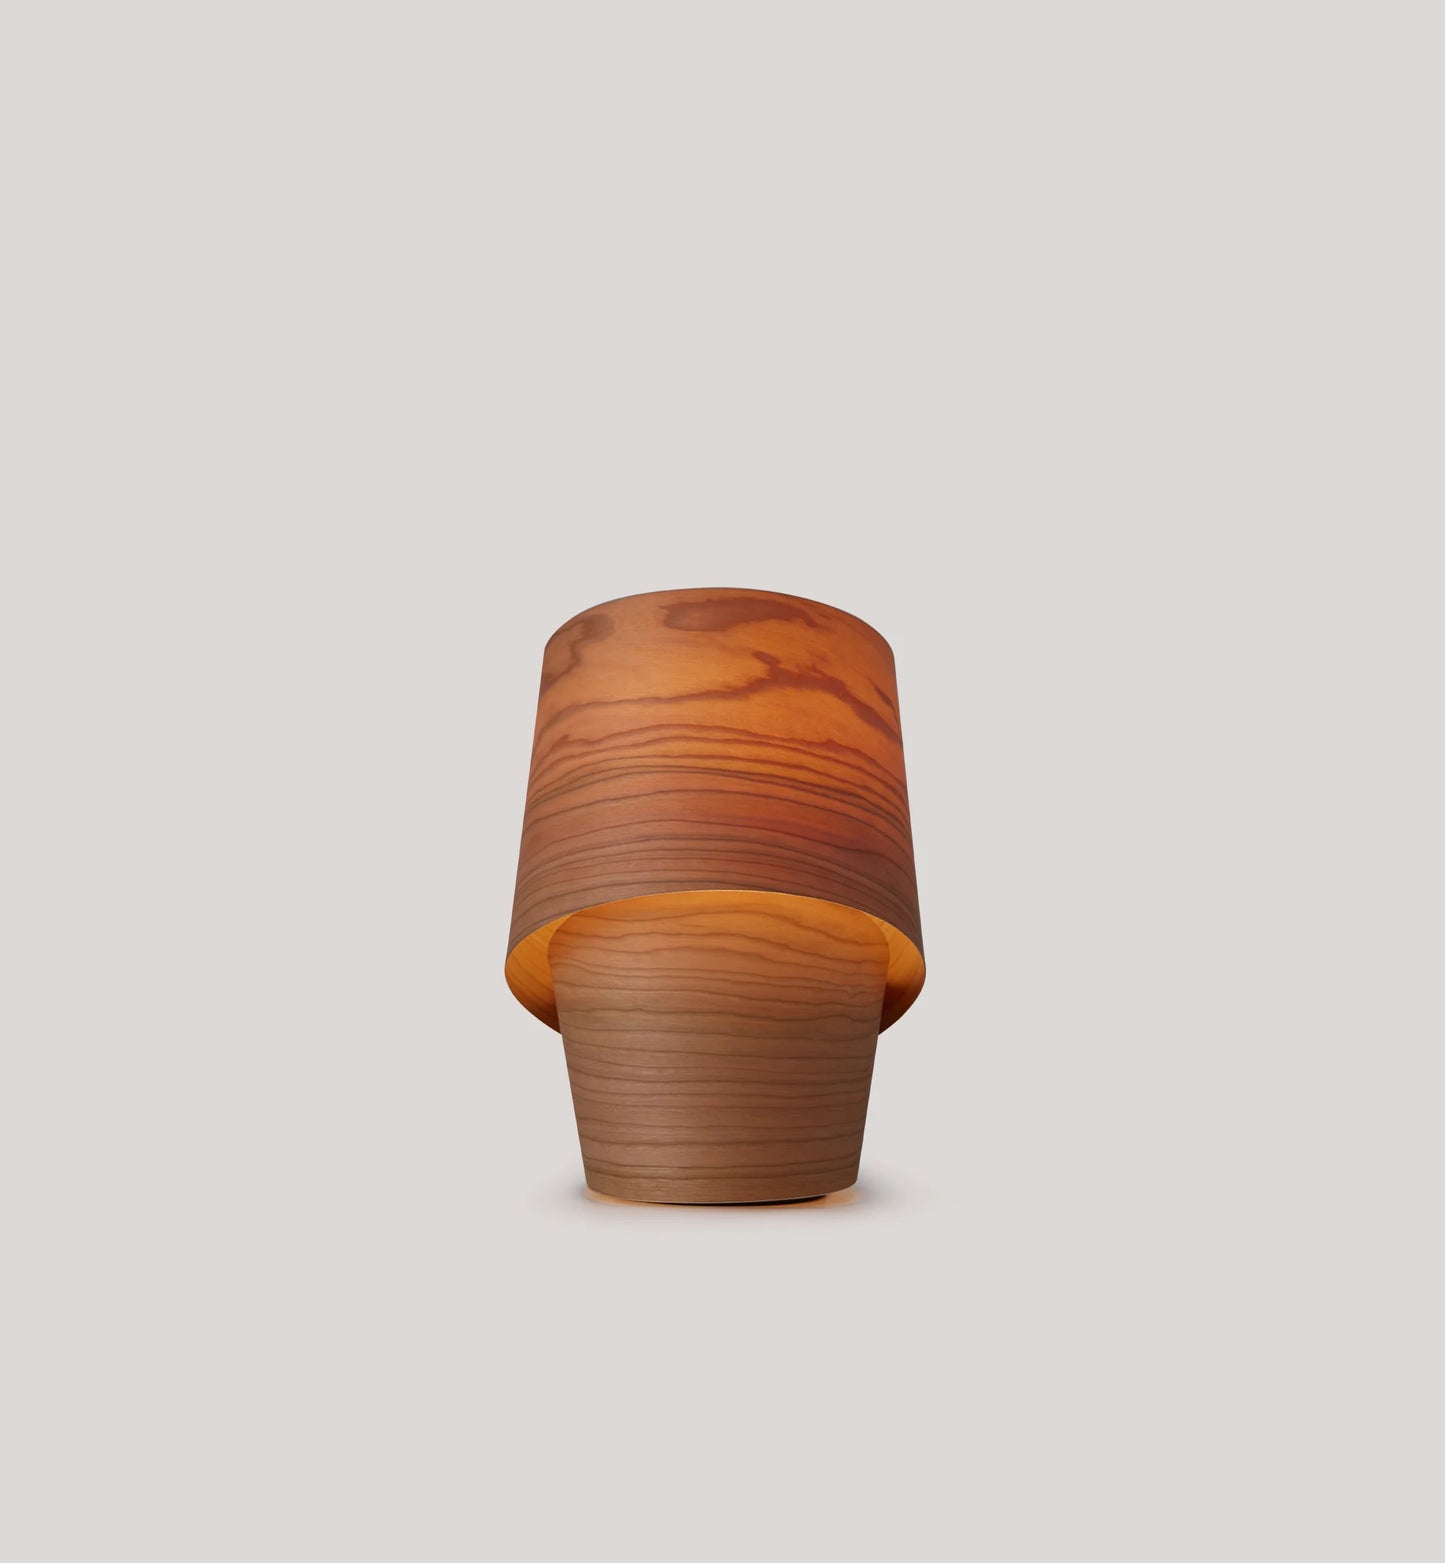 natural wood veneer table lamp. mini table lamp. best table light. table light design. mini lamp. Natural Wood veneer